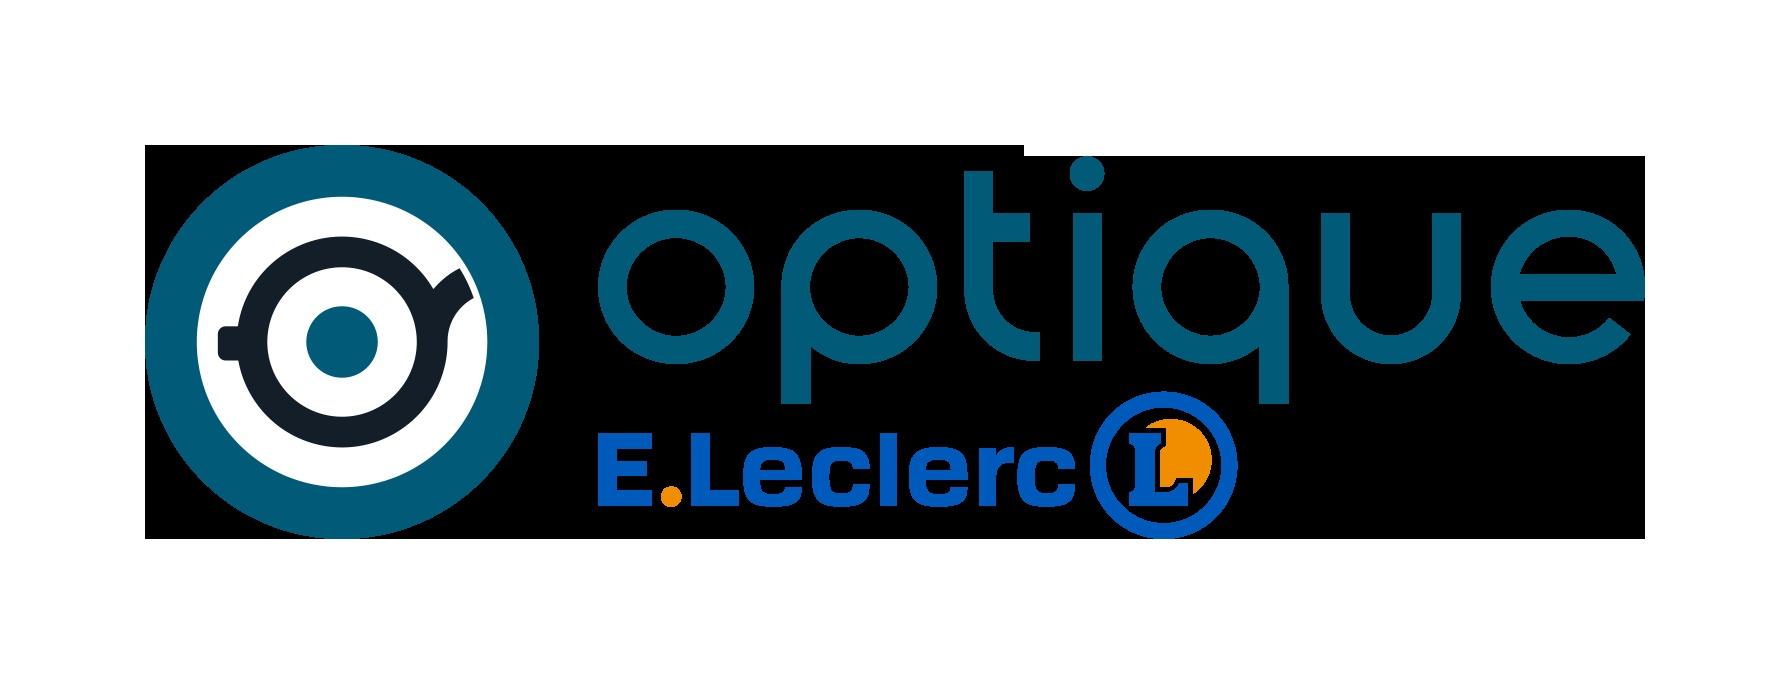 E.leclerc Optique Casteljaloux